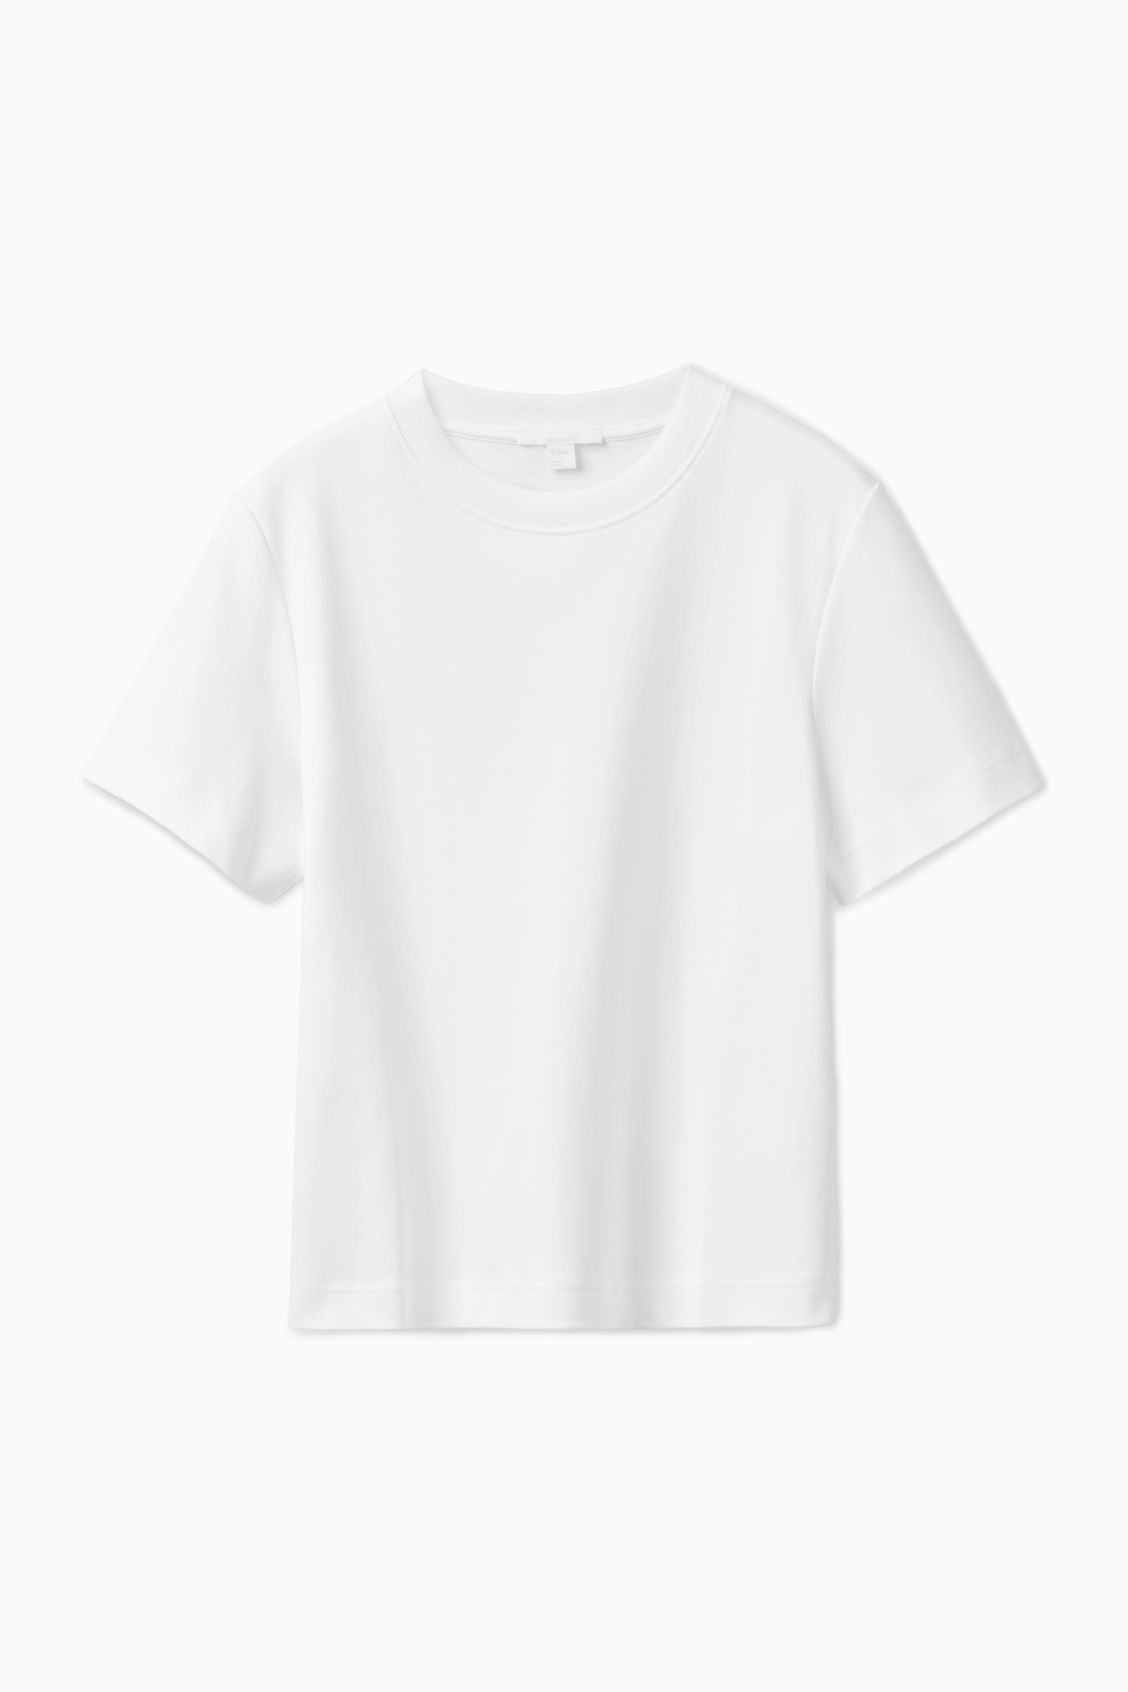 COS + The Clean Cut T-Shirt